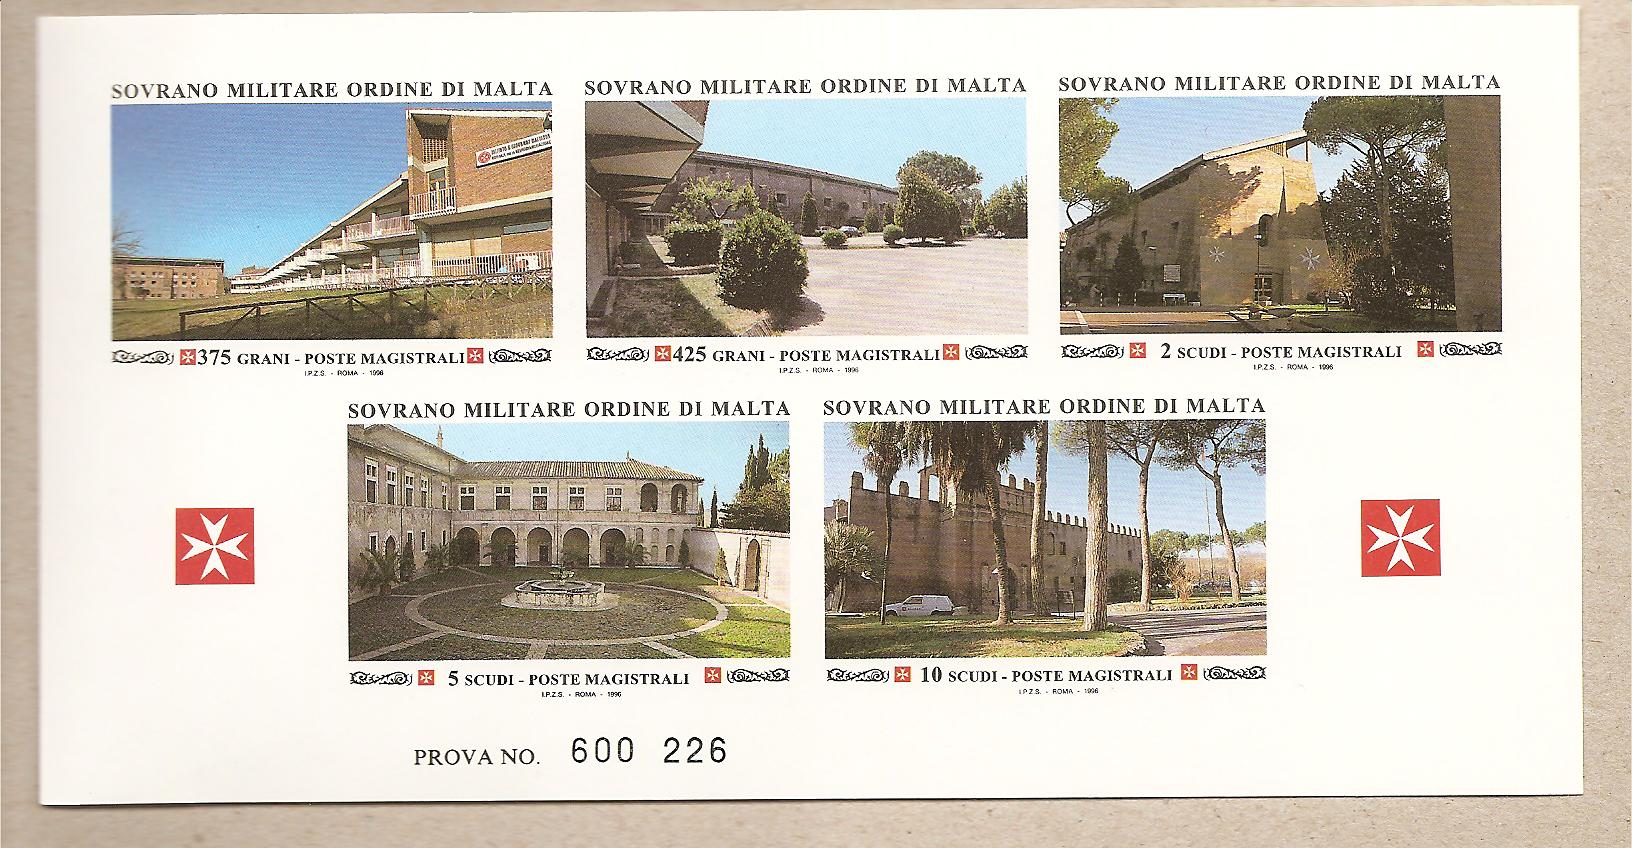 36896 - SMOM - Prova di stampa serie 498-502 - 1996 - Ospedale di San Giovanni e Castello della Magliana